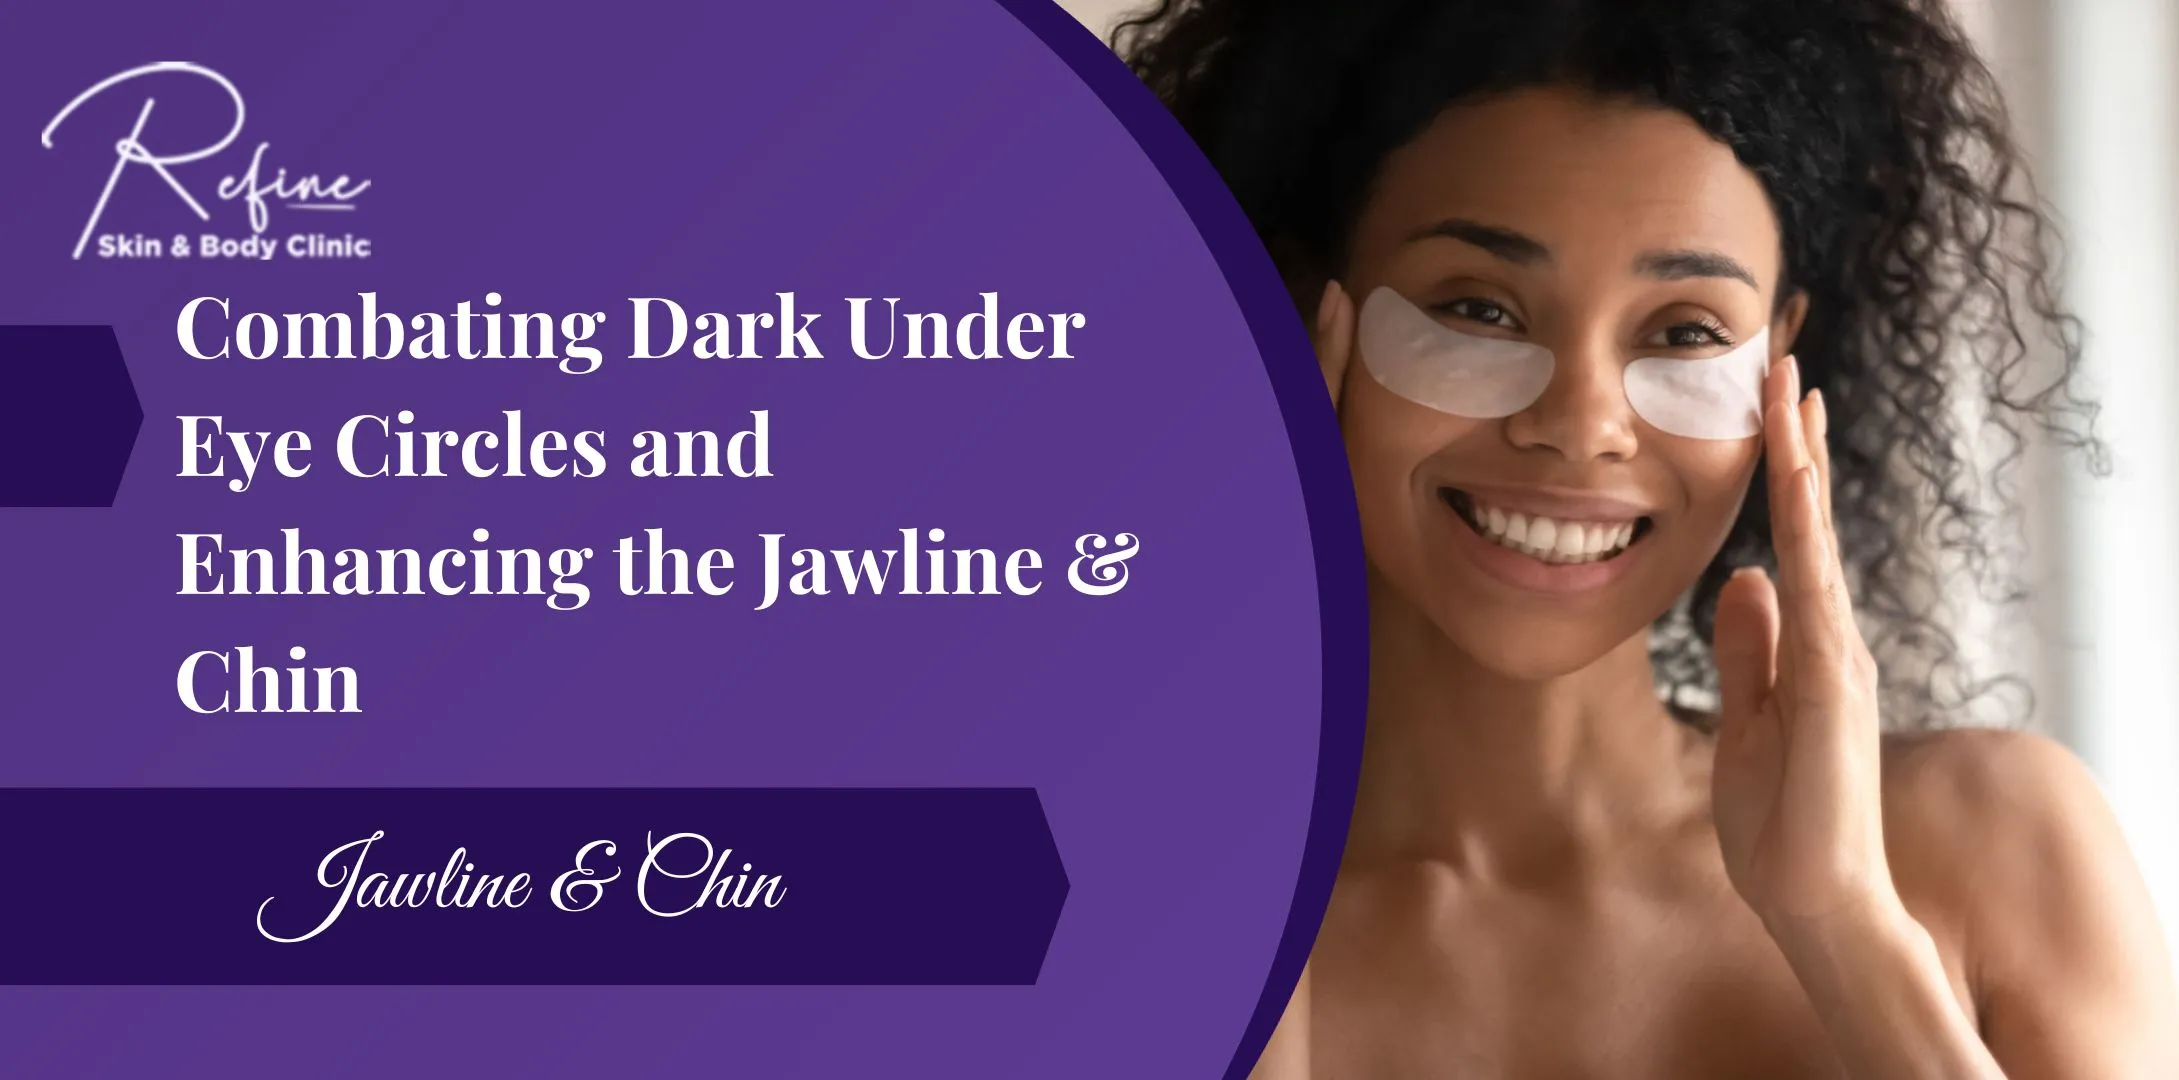 Combating Dark Under Eye Circles and Enhancing the Jawline & Chin